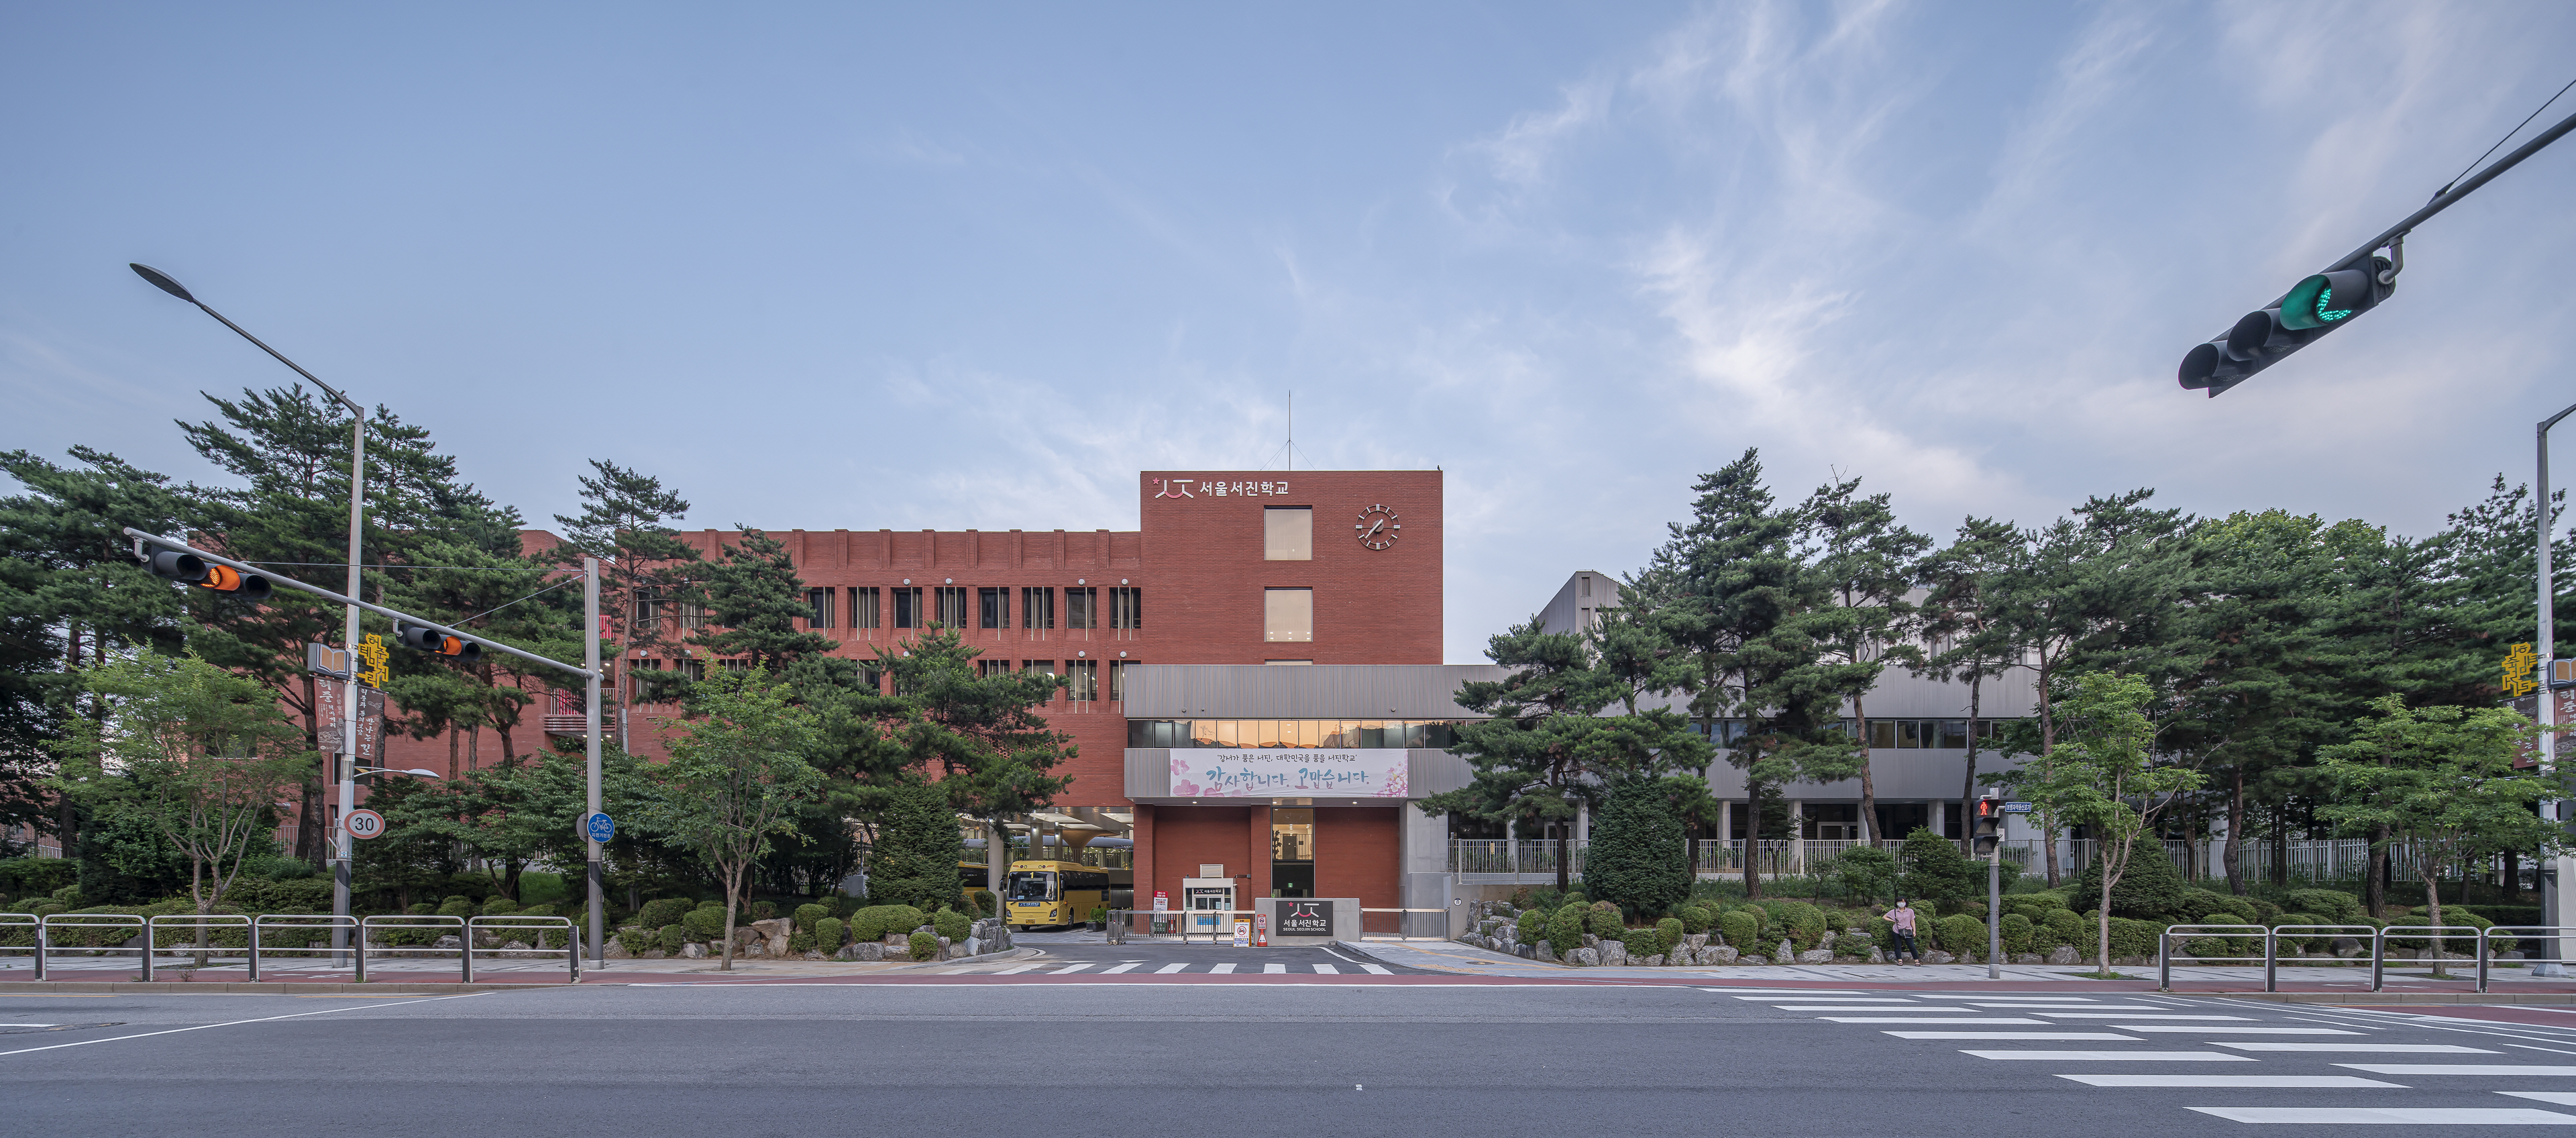 @ 서울서진학교는 2018년 8월 공사를 시작해 2020년 3월 정식 개교하고 신입생을 받았다.